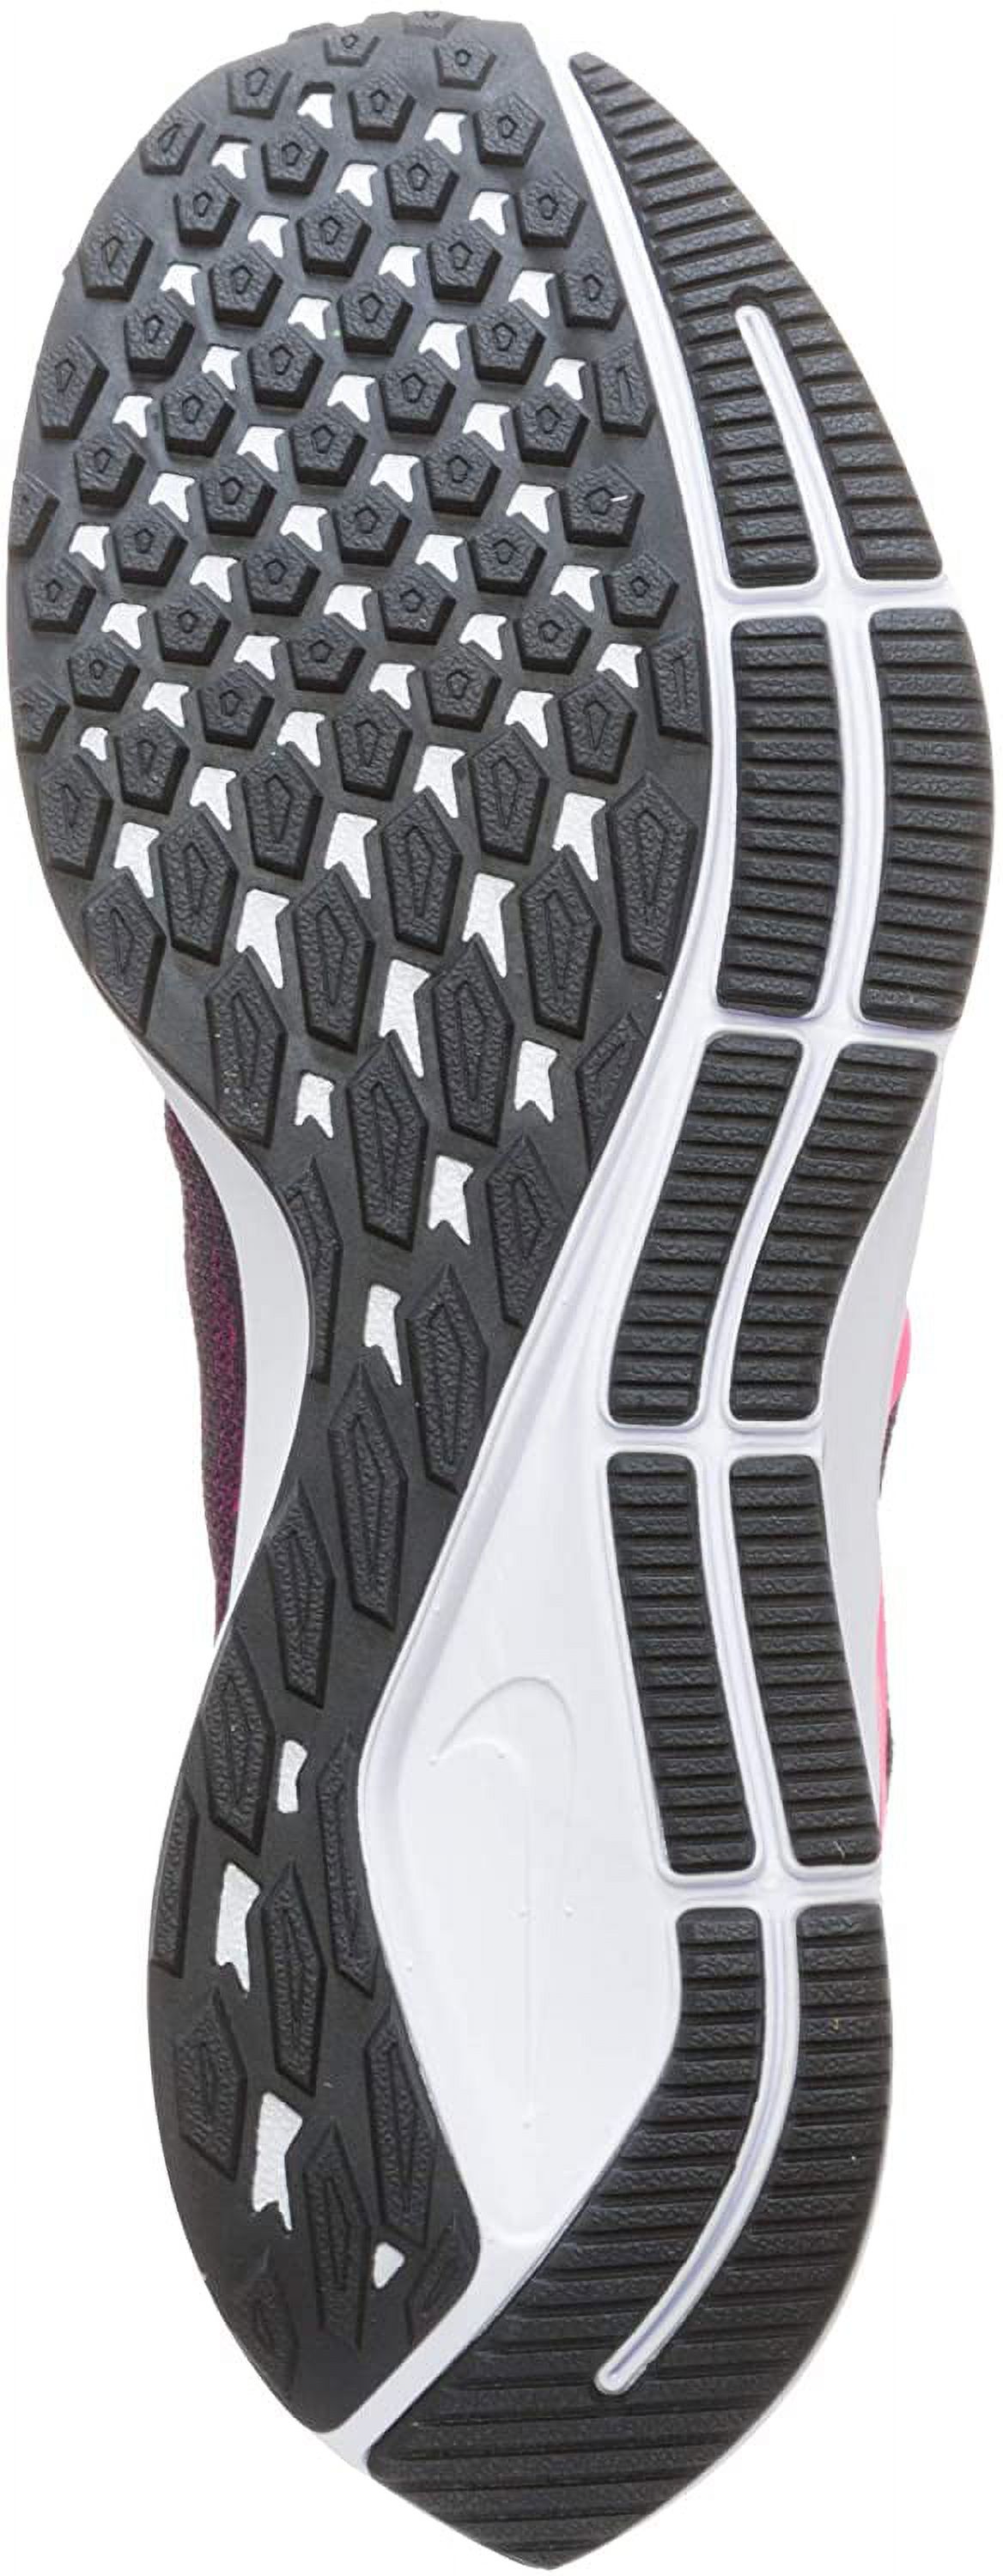 Nike Women's Air Zoom Pegasus 36 Running Shoe, Black/Pink/Berry, 8.5 B(M) US - image 3 of 7